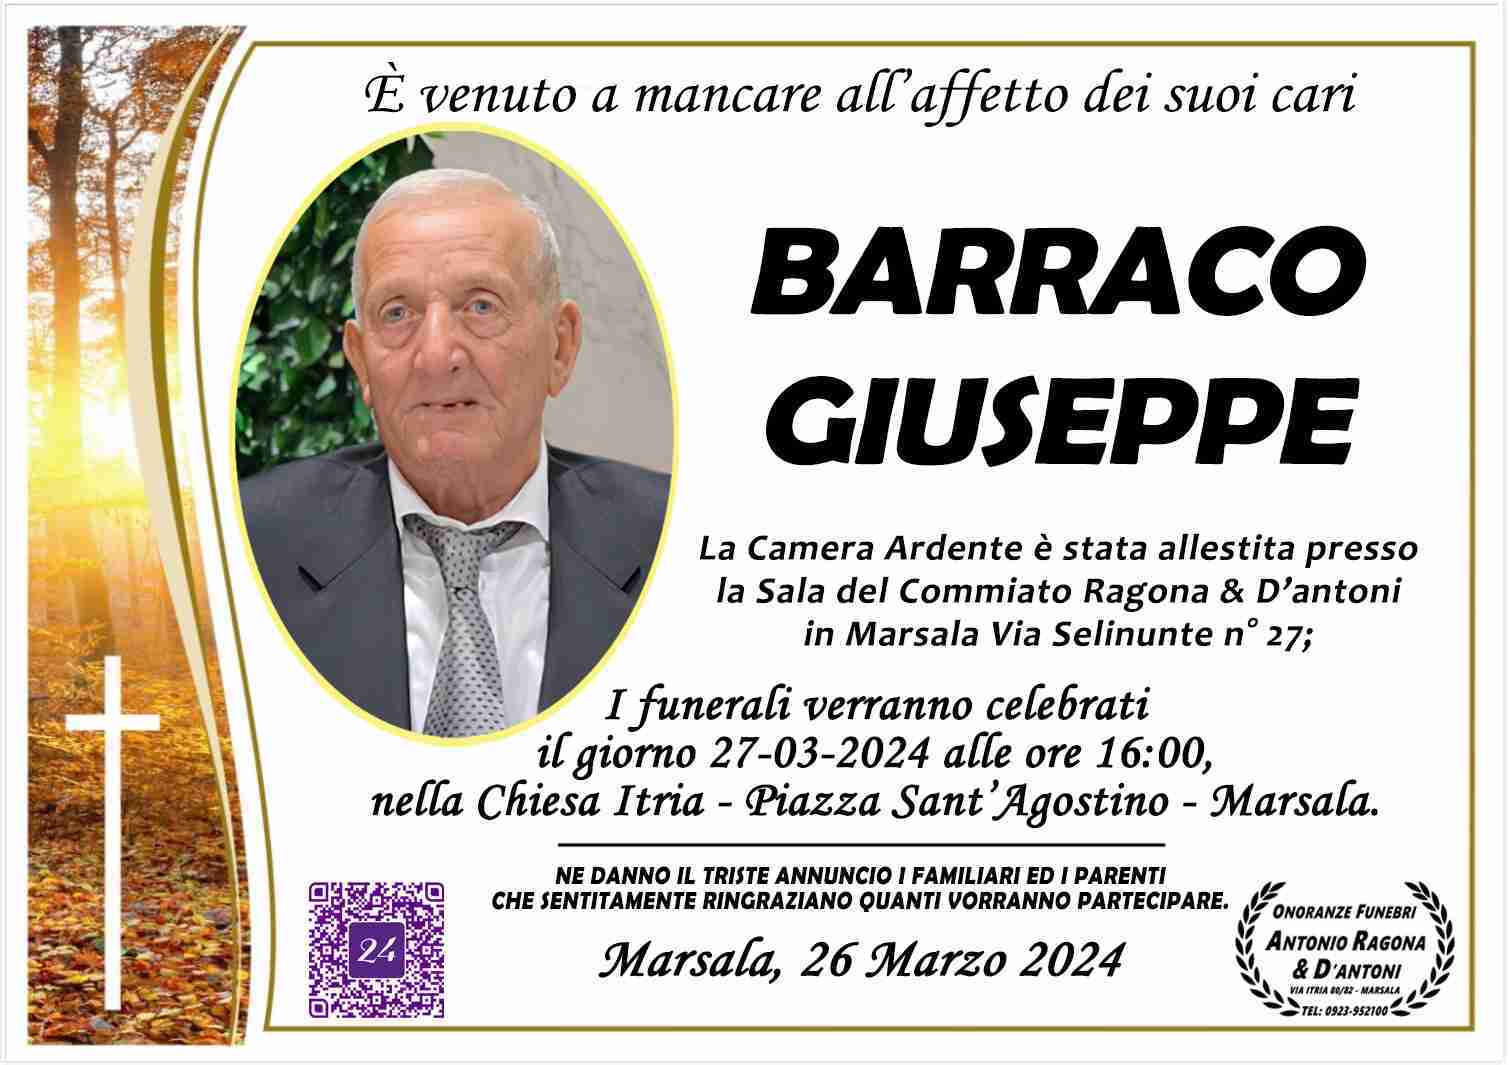 Giuseppe Barraco